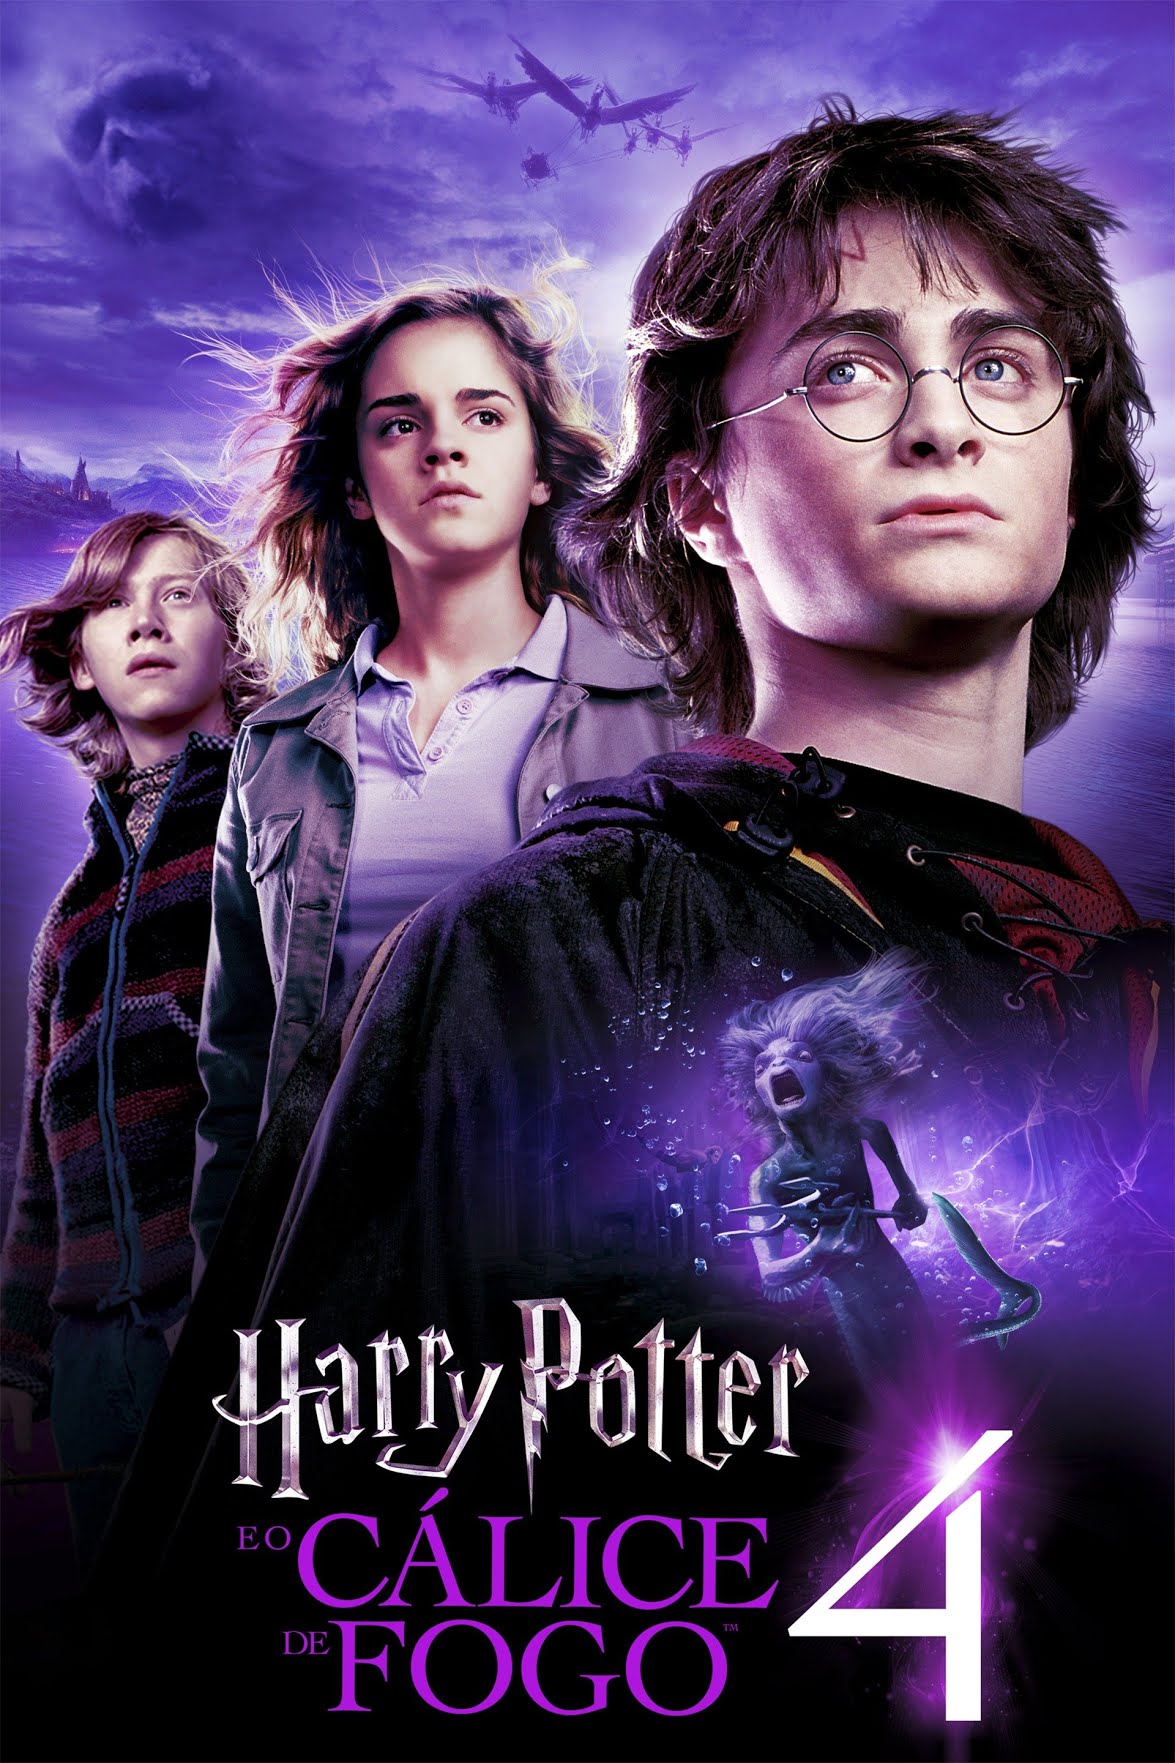 Harry Potter e o cálice de fogo (NOVO) - Livro 4 - J. K. Rowling